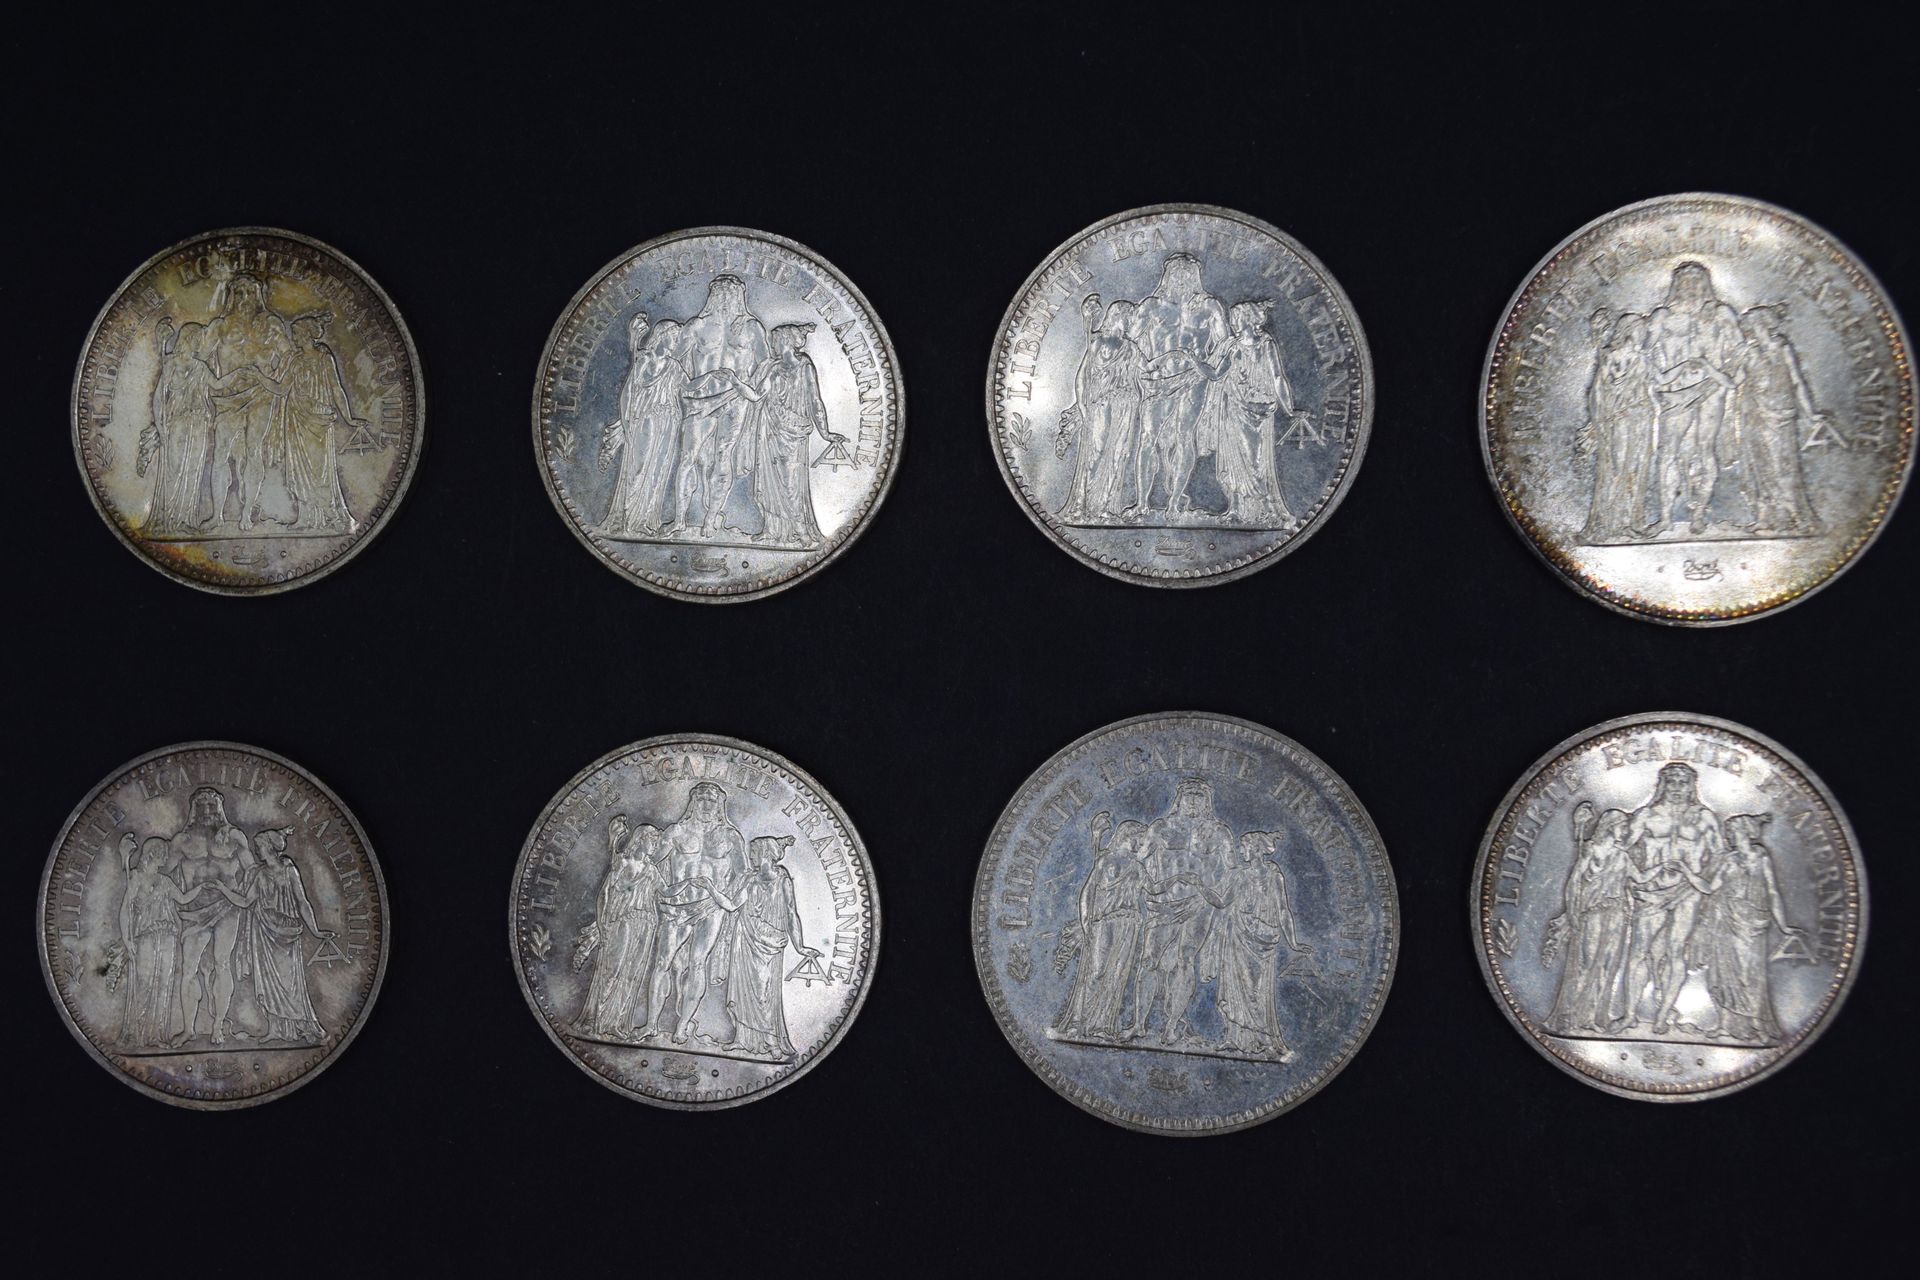 Null Ventitré monete d'argento di Ercole:
- 50 franchi (x 6)
- 10 franchi (x 17)&hellip;